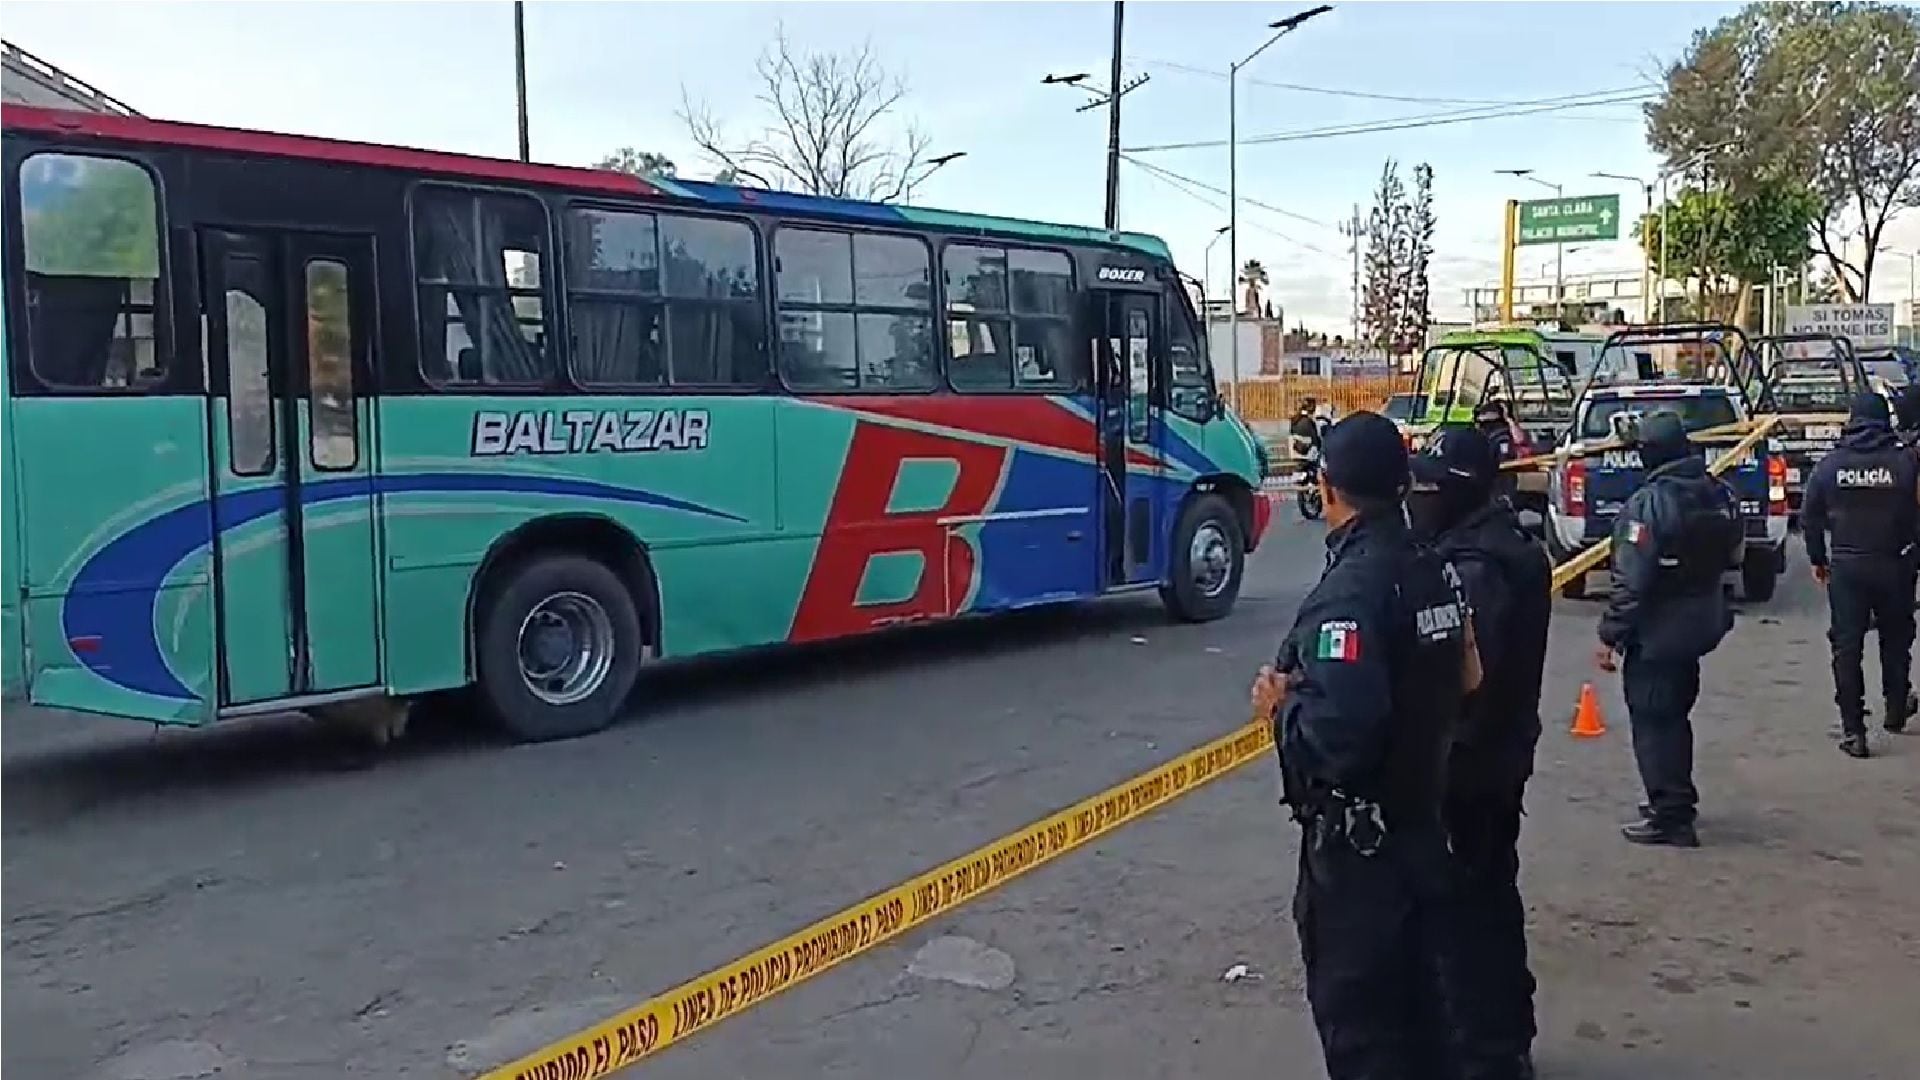 Asalto en el transporte público termina con joven asesinado en el municipio de Ecatepec, Edomex  (OsvaldoMullerM/Facebook)